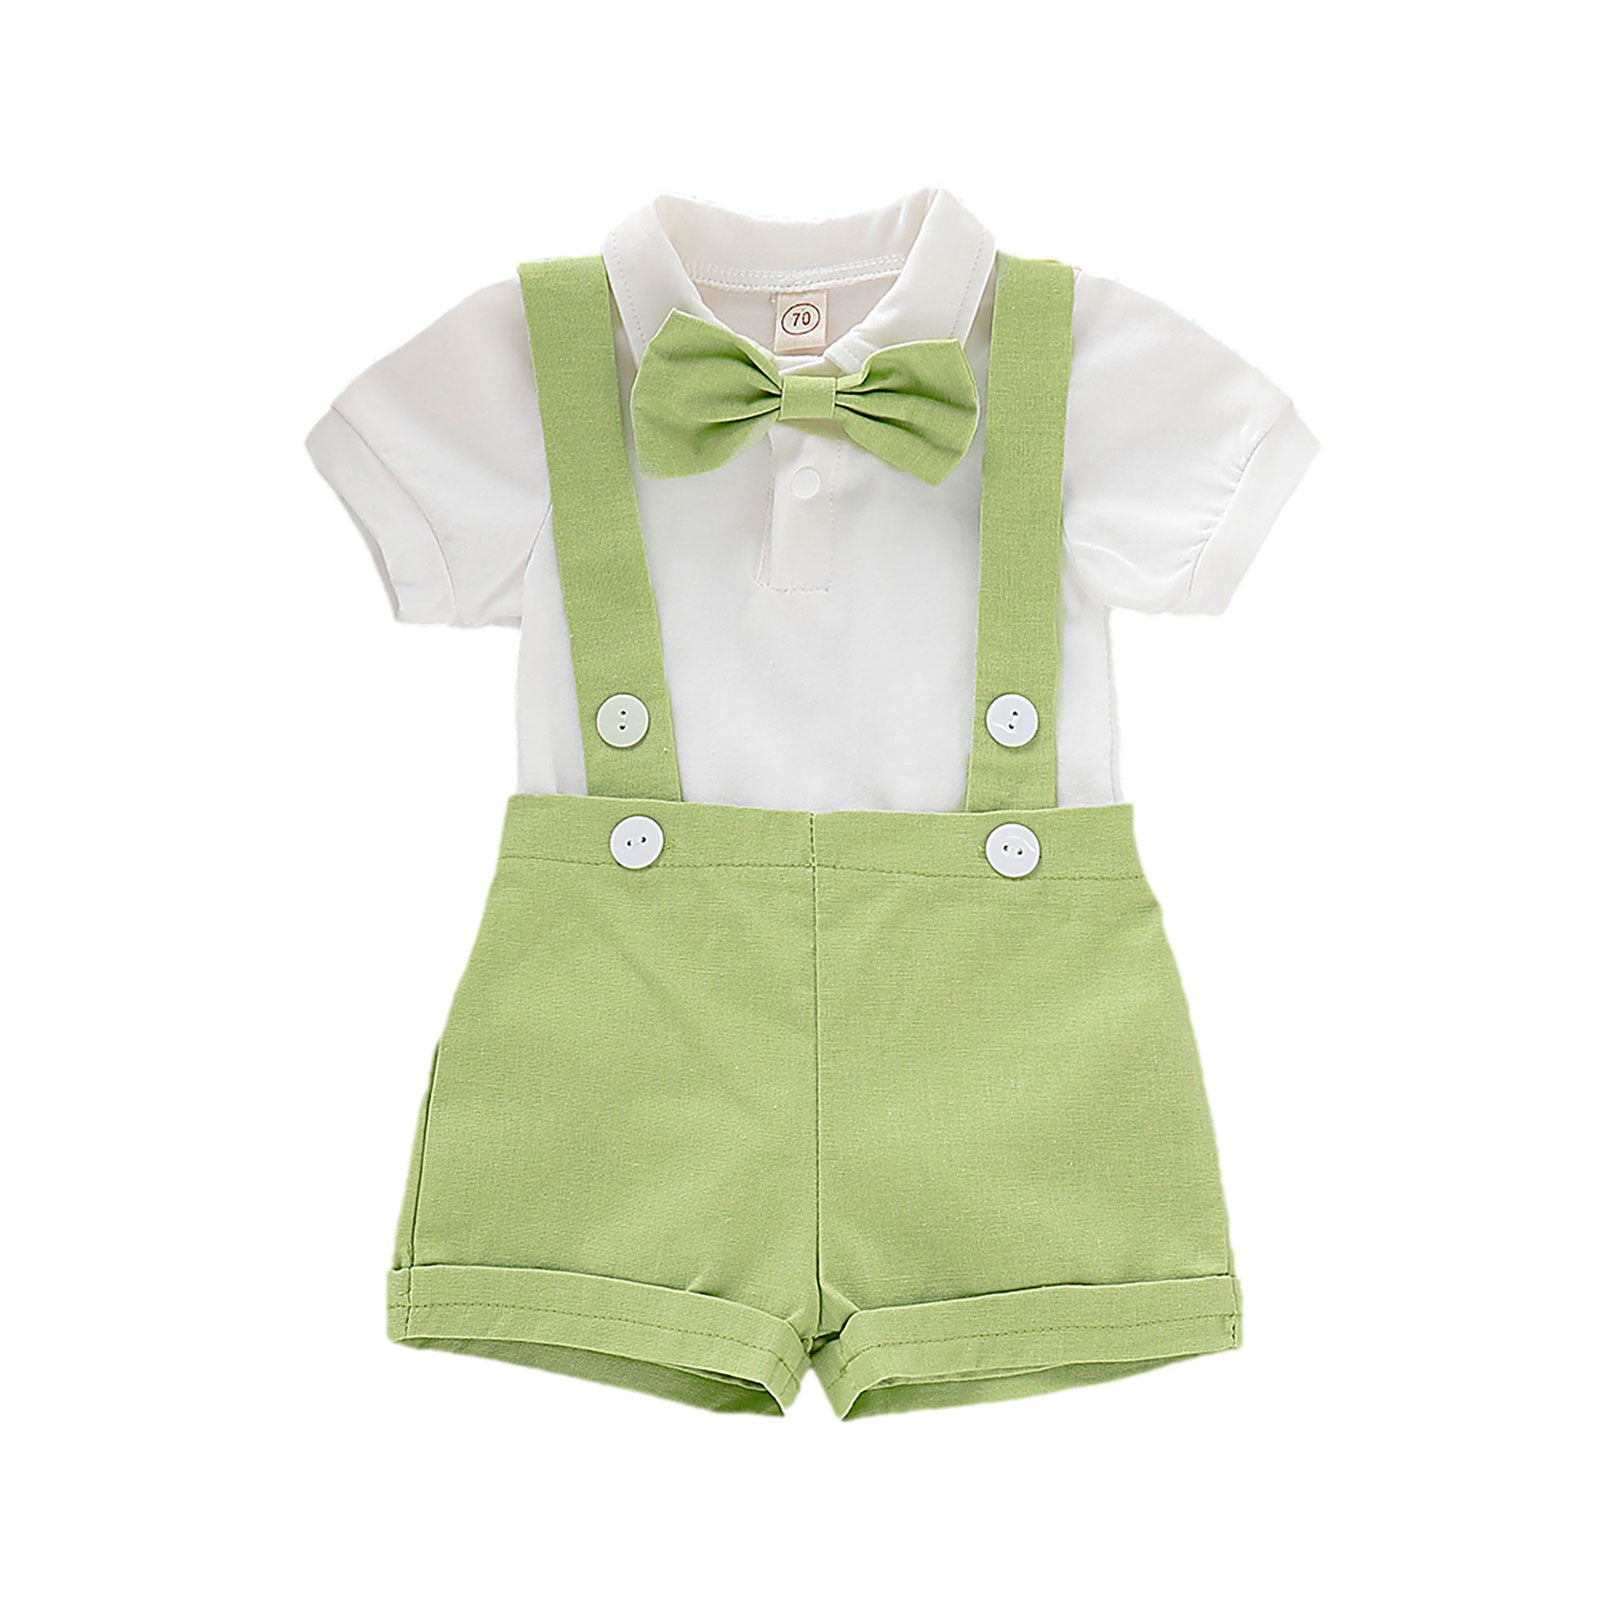 Macaquinho Gravatinha e Botões Macaquinho Loja Click Certo Verde Bebê 0-6 Meses 36cm 